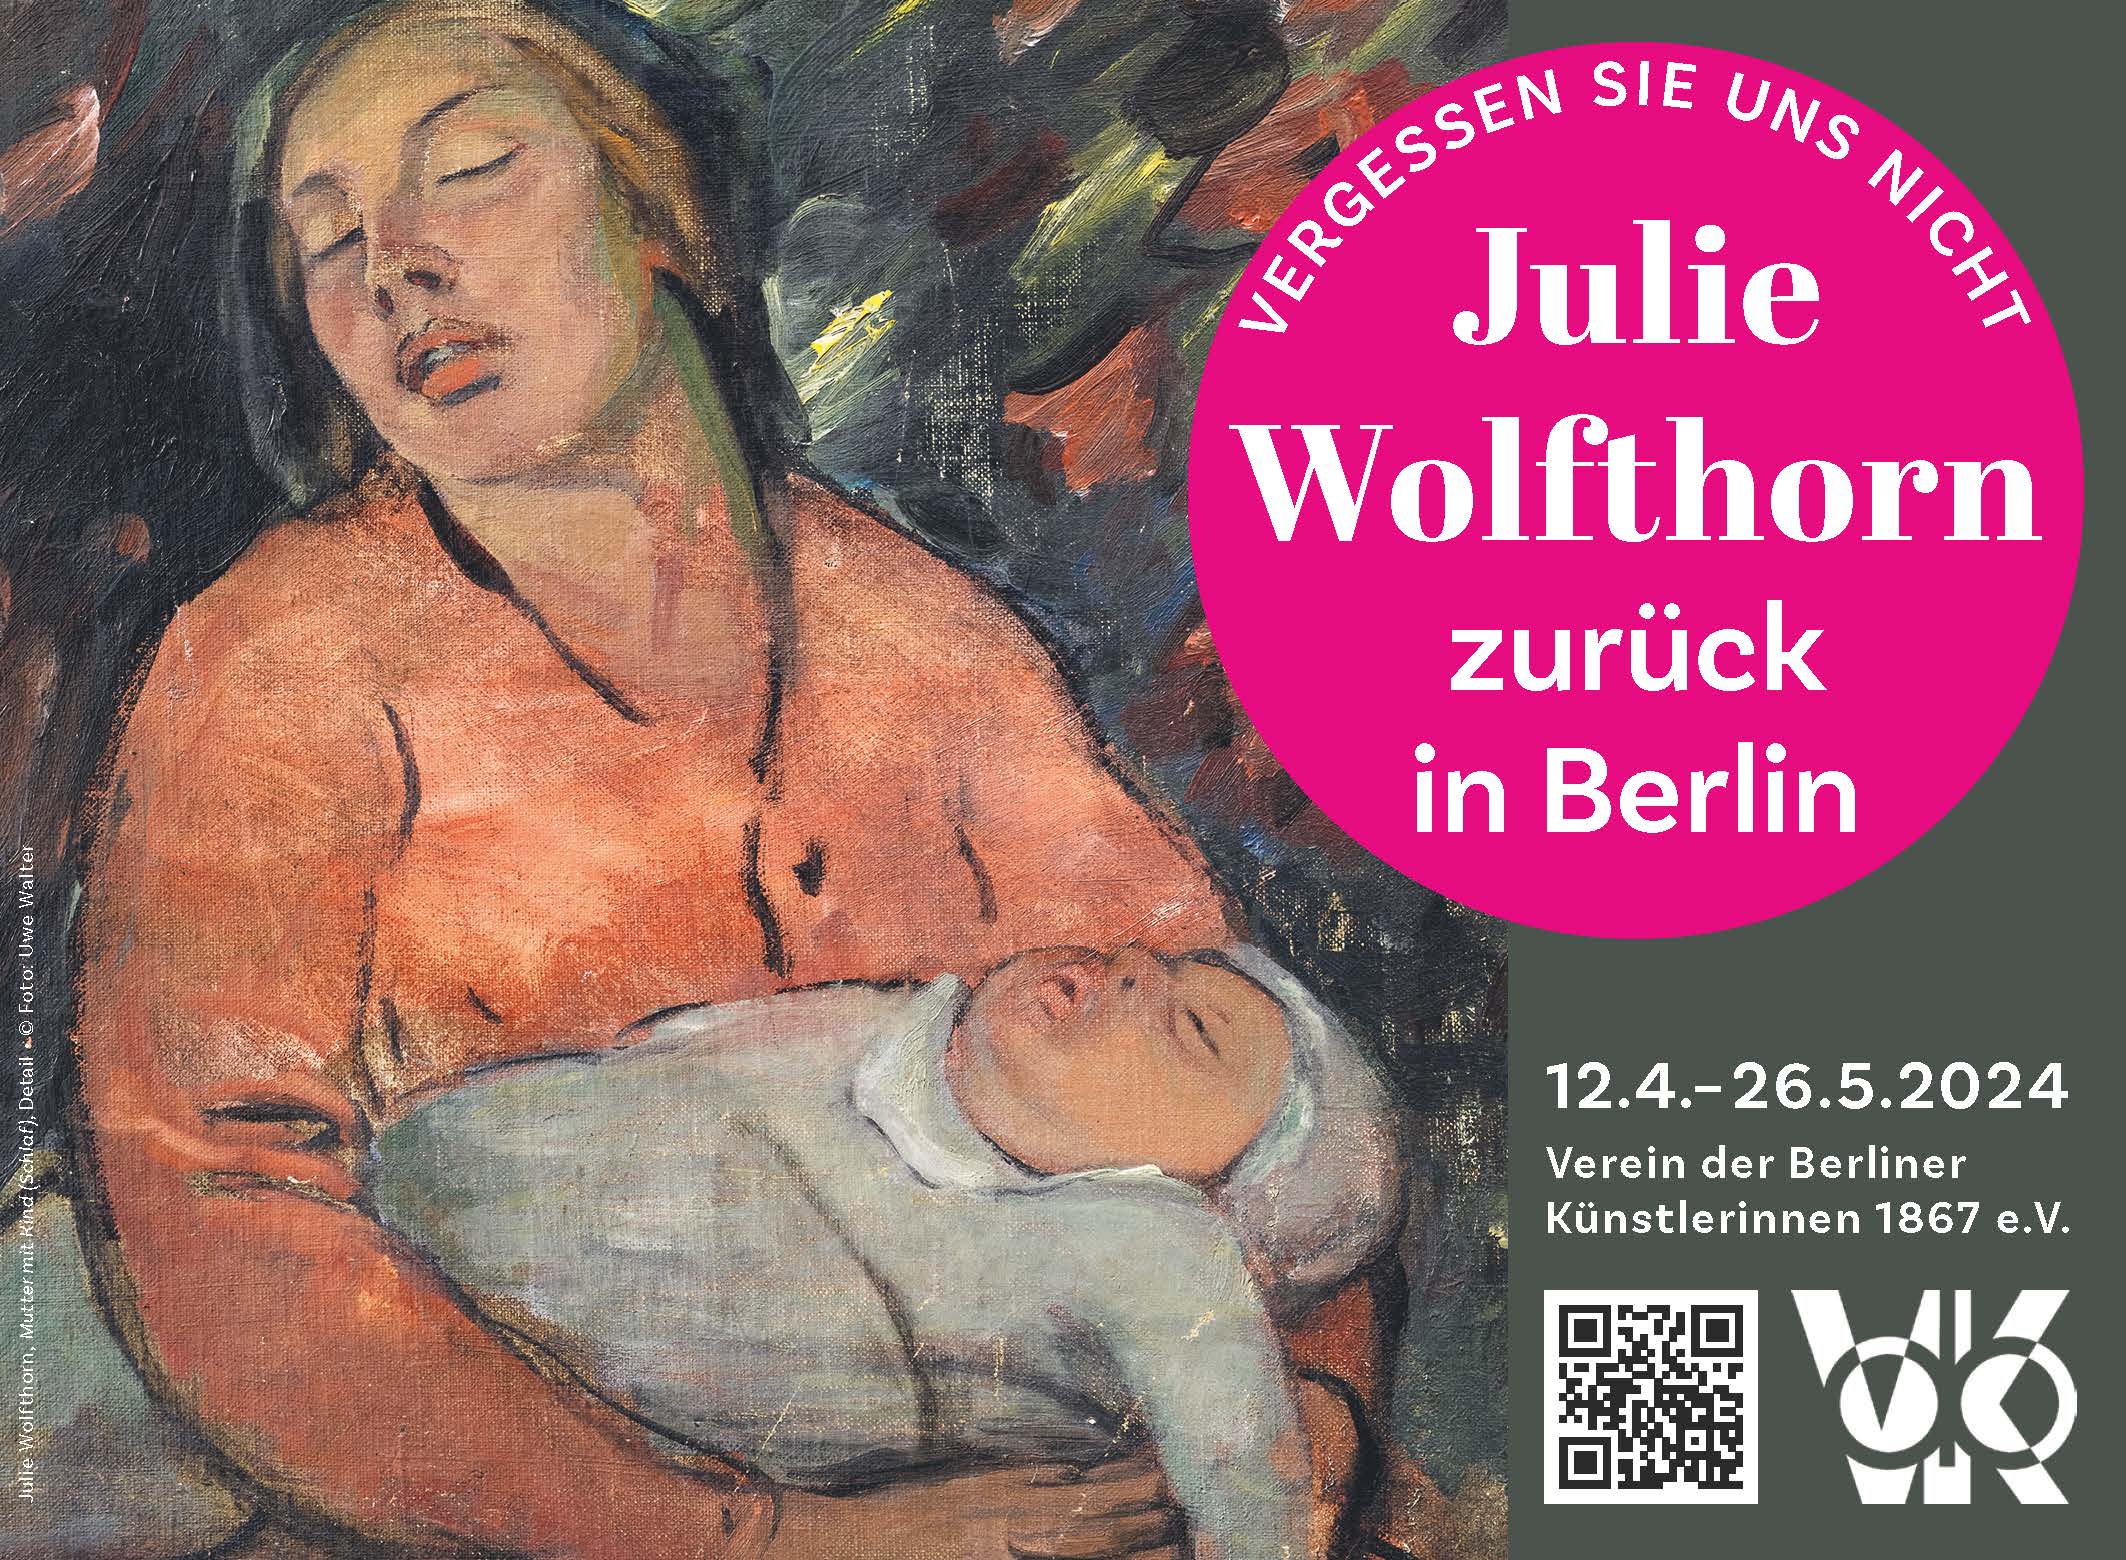 Vergessen Sie uns nicht – Julie Wolfthorn zurück in Berlin